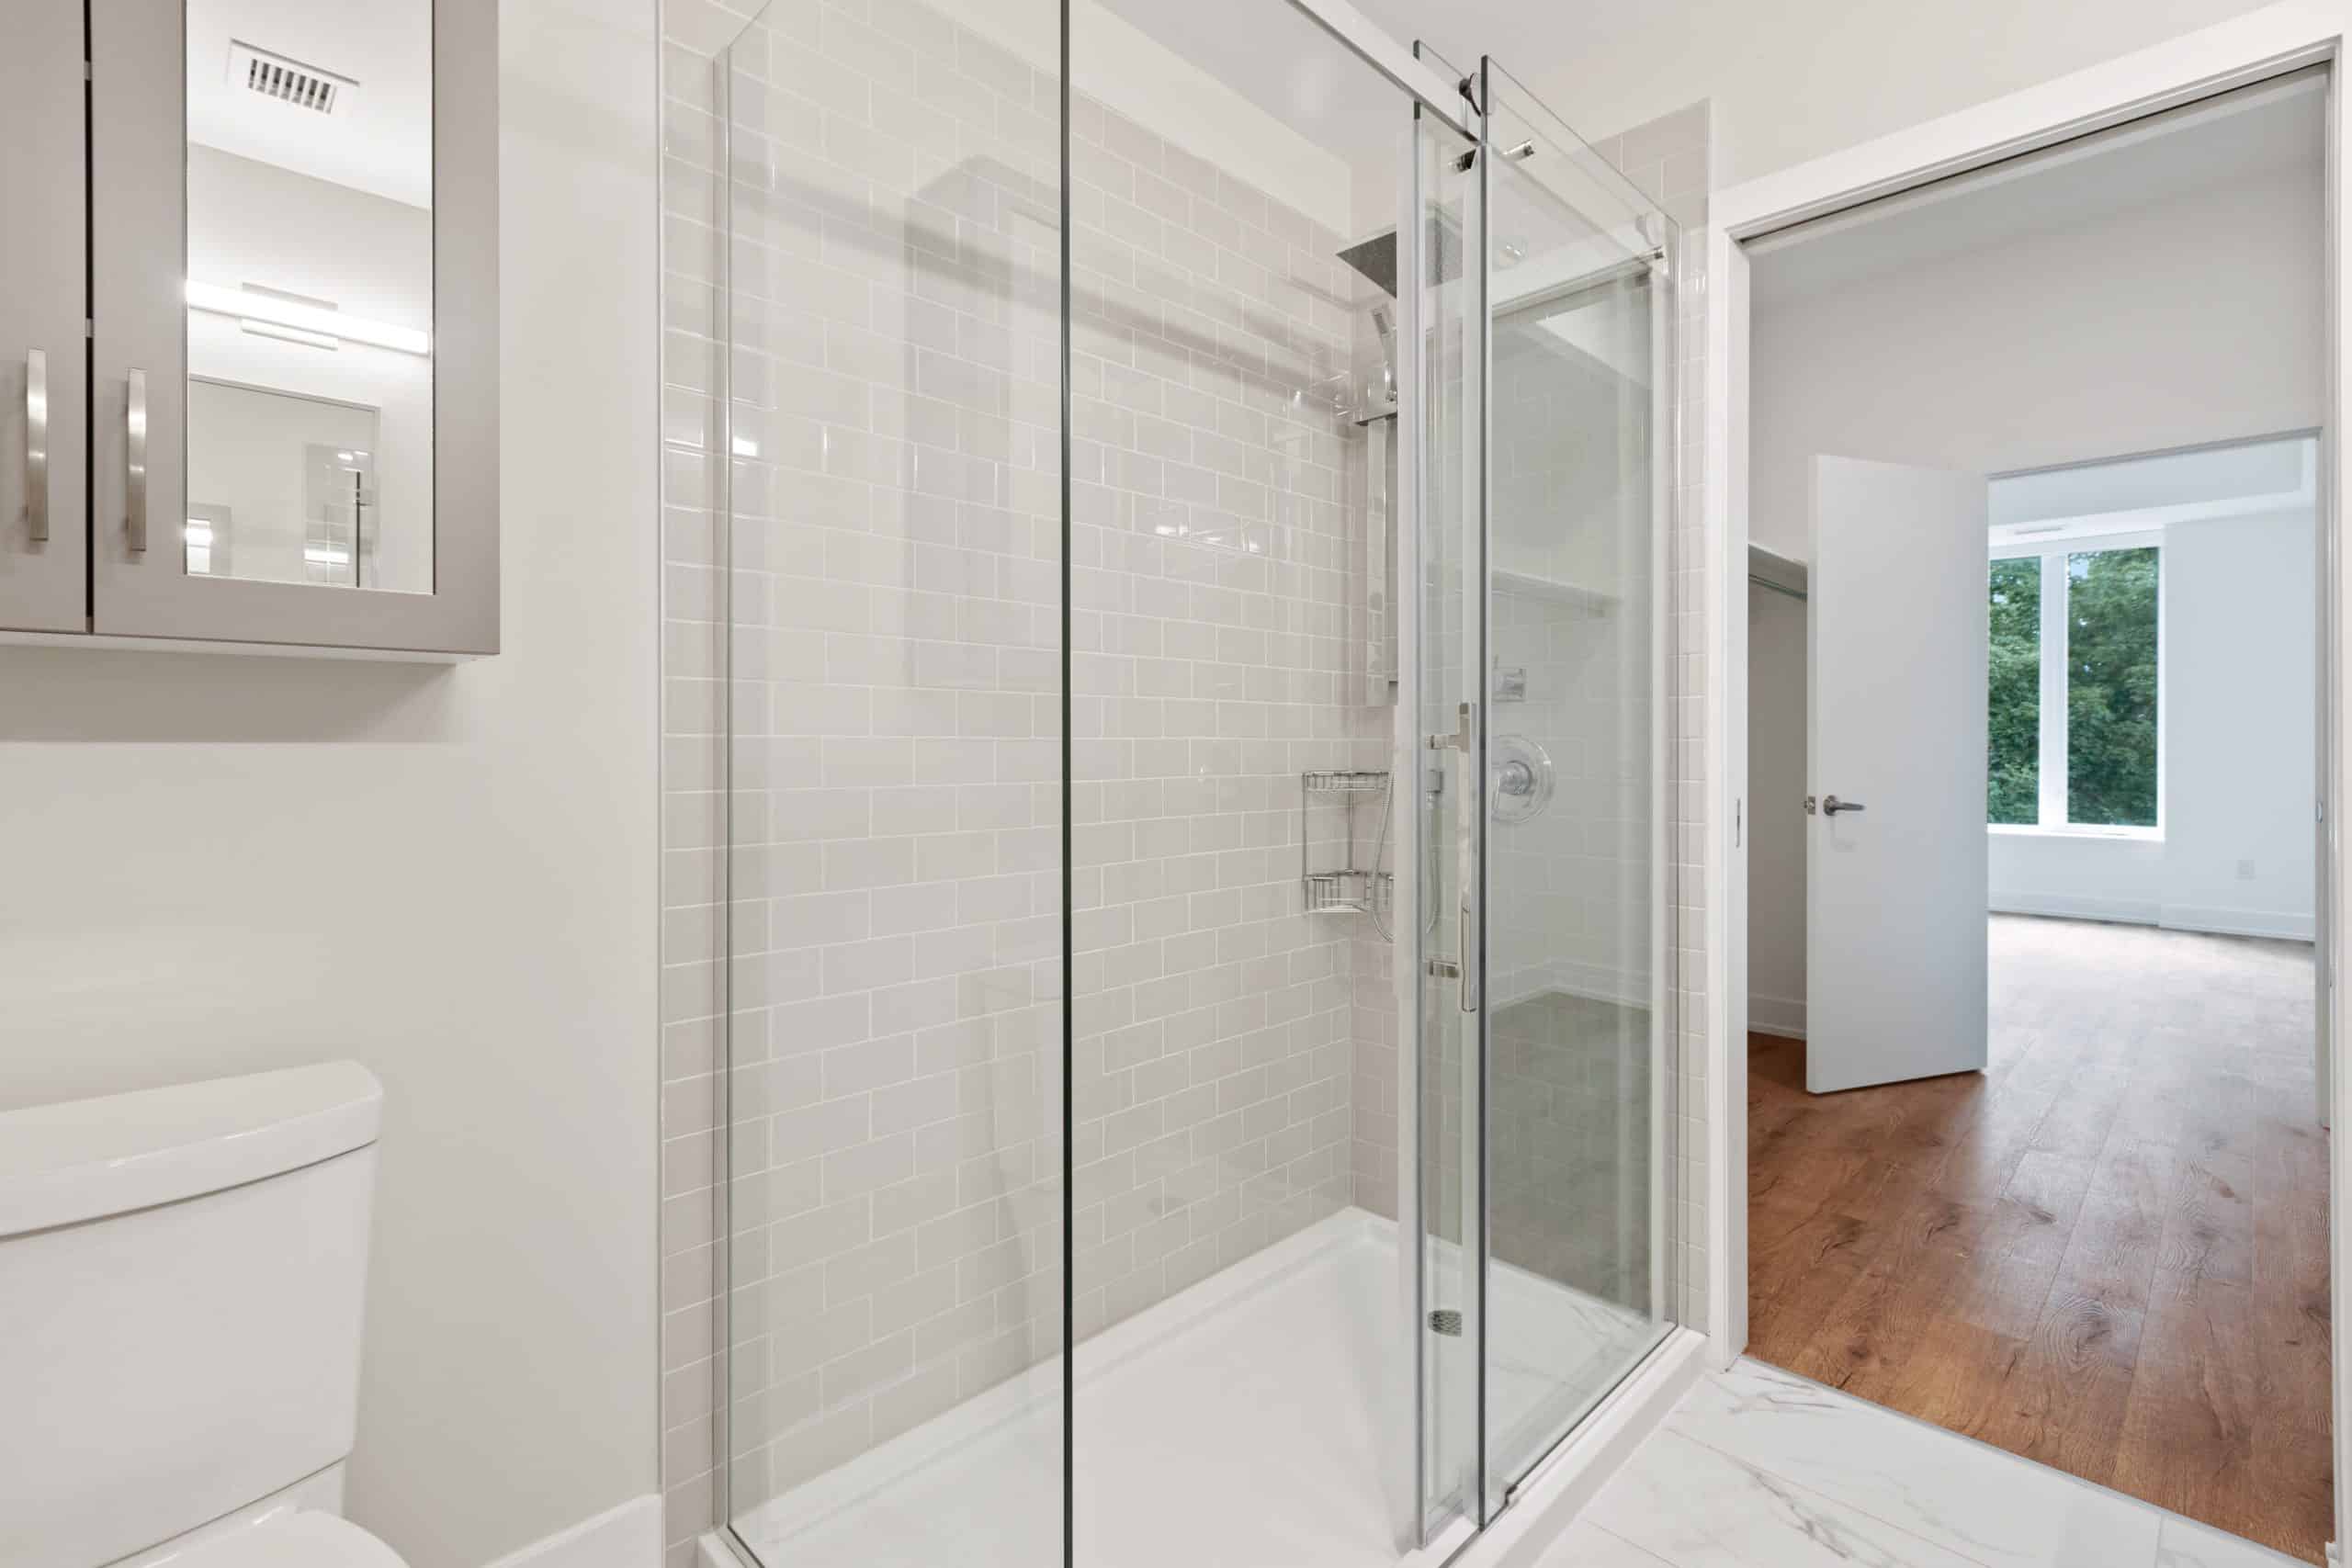 A clean, streak-free glass shower door awaits its next use